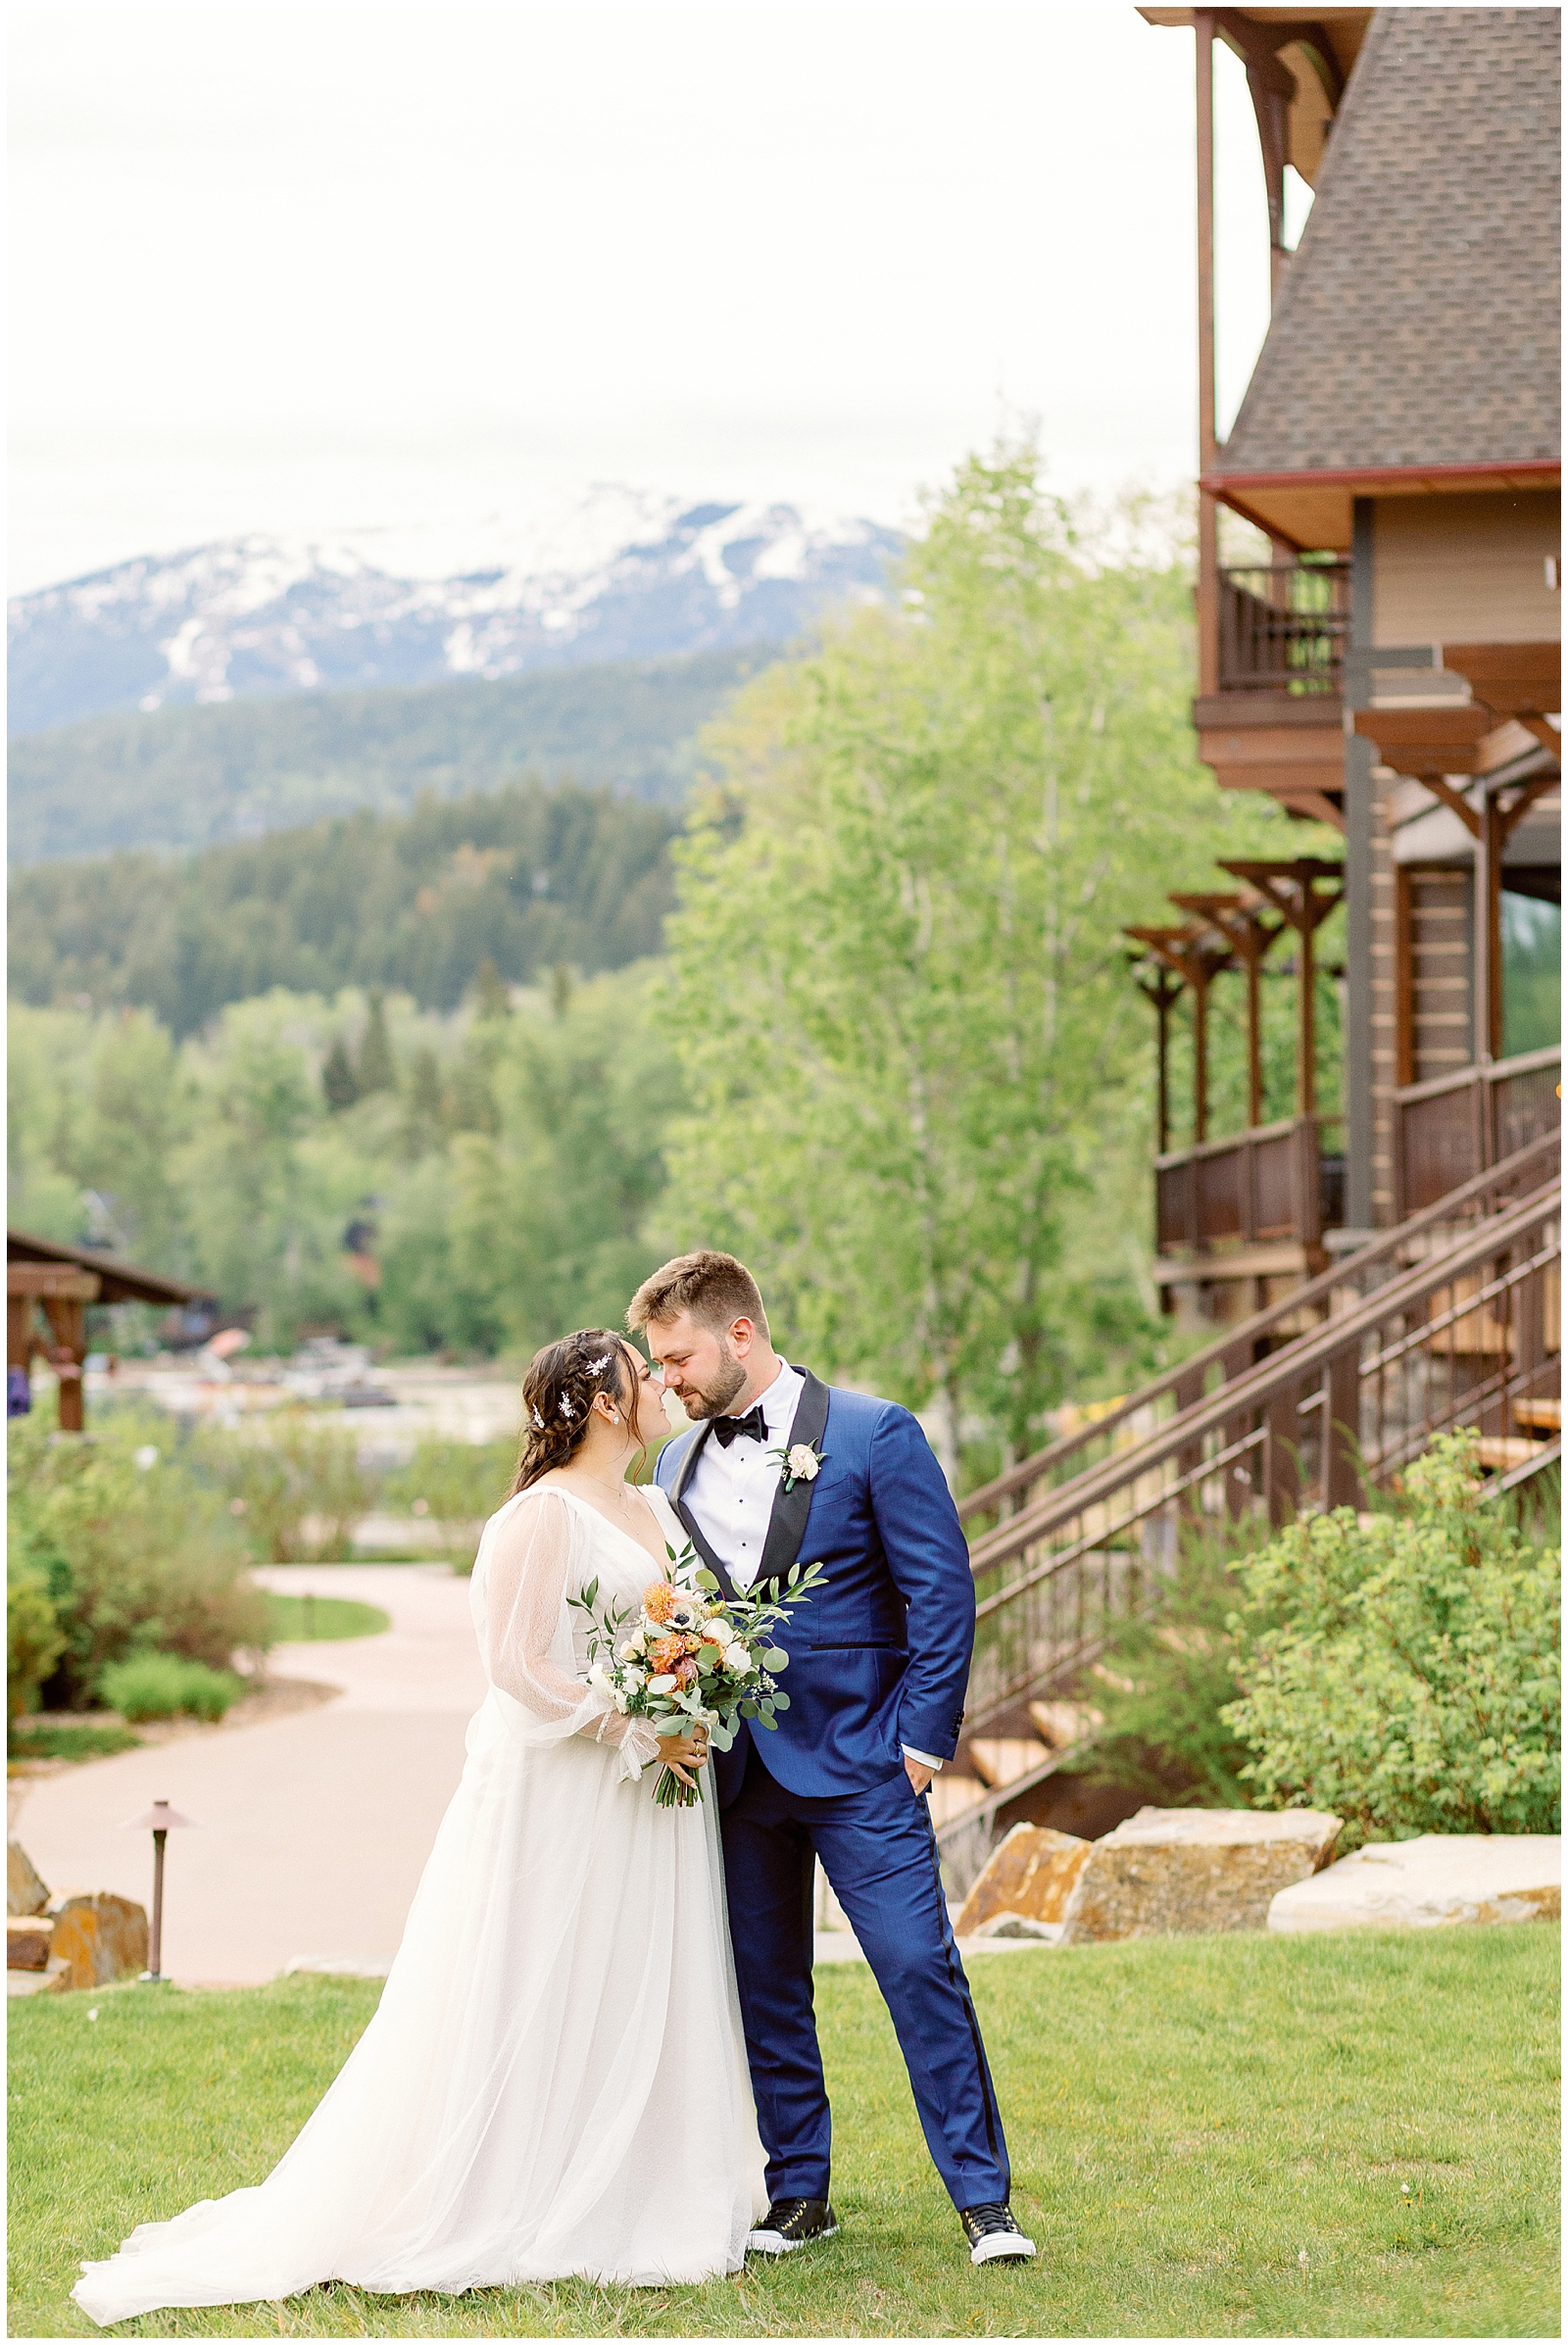 Elegant Montana Wedding at the Lodge at Whitefish Lake